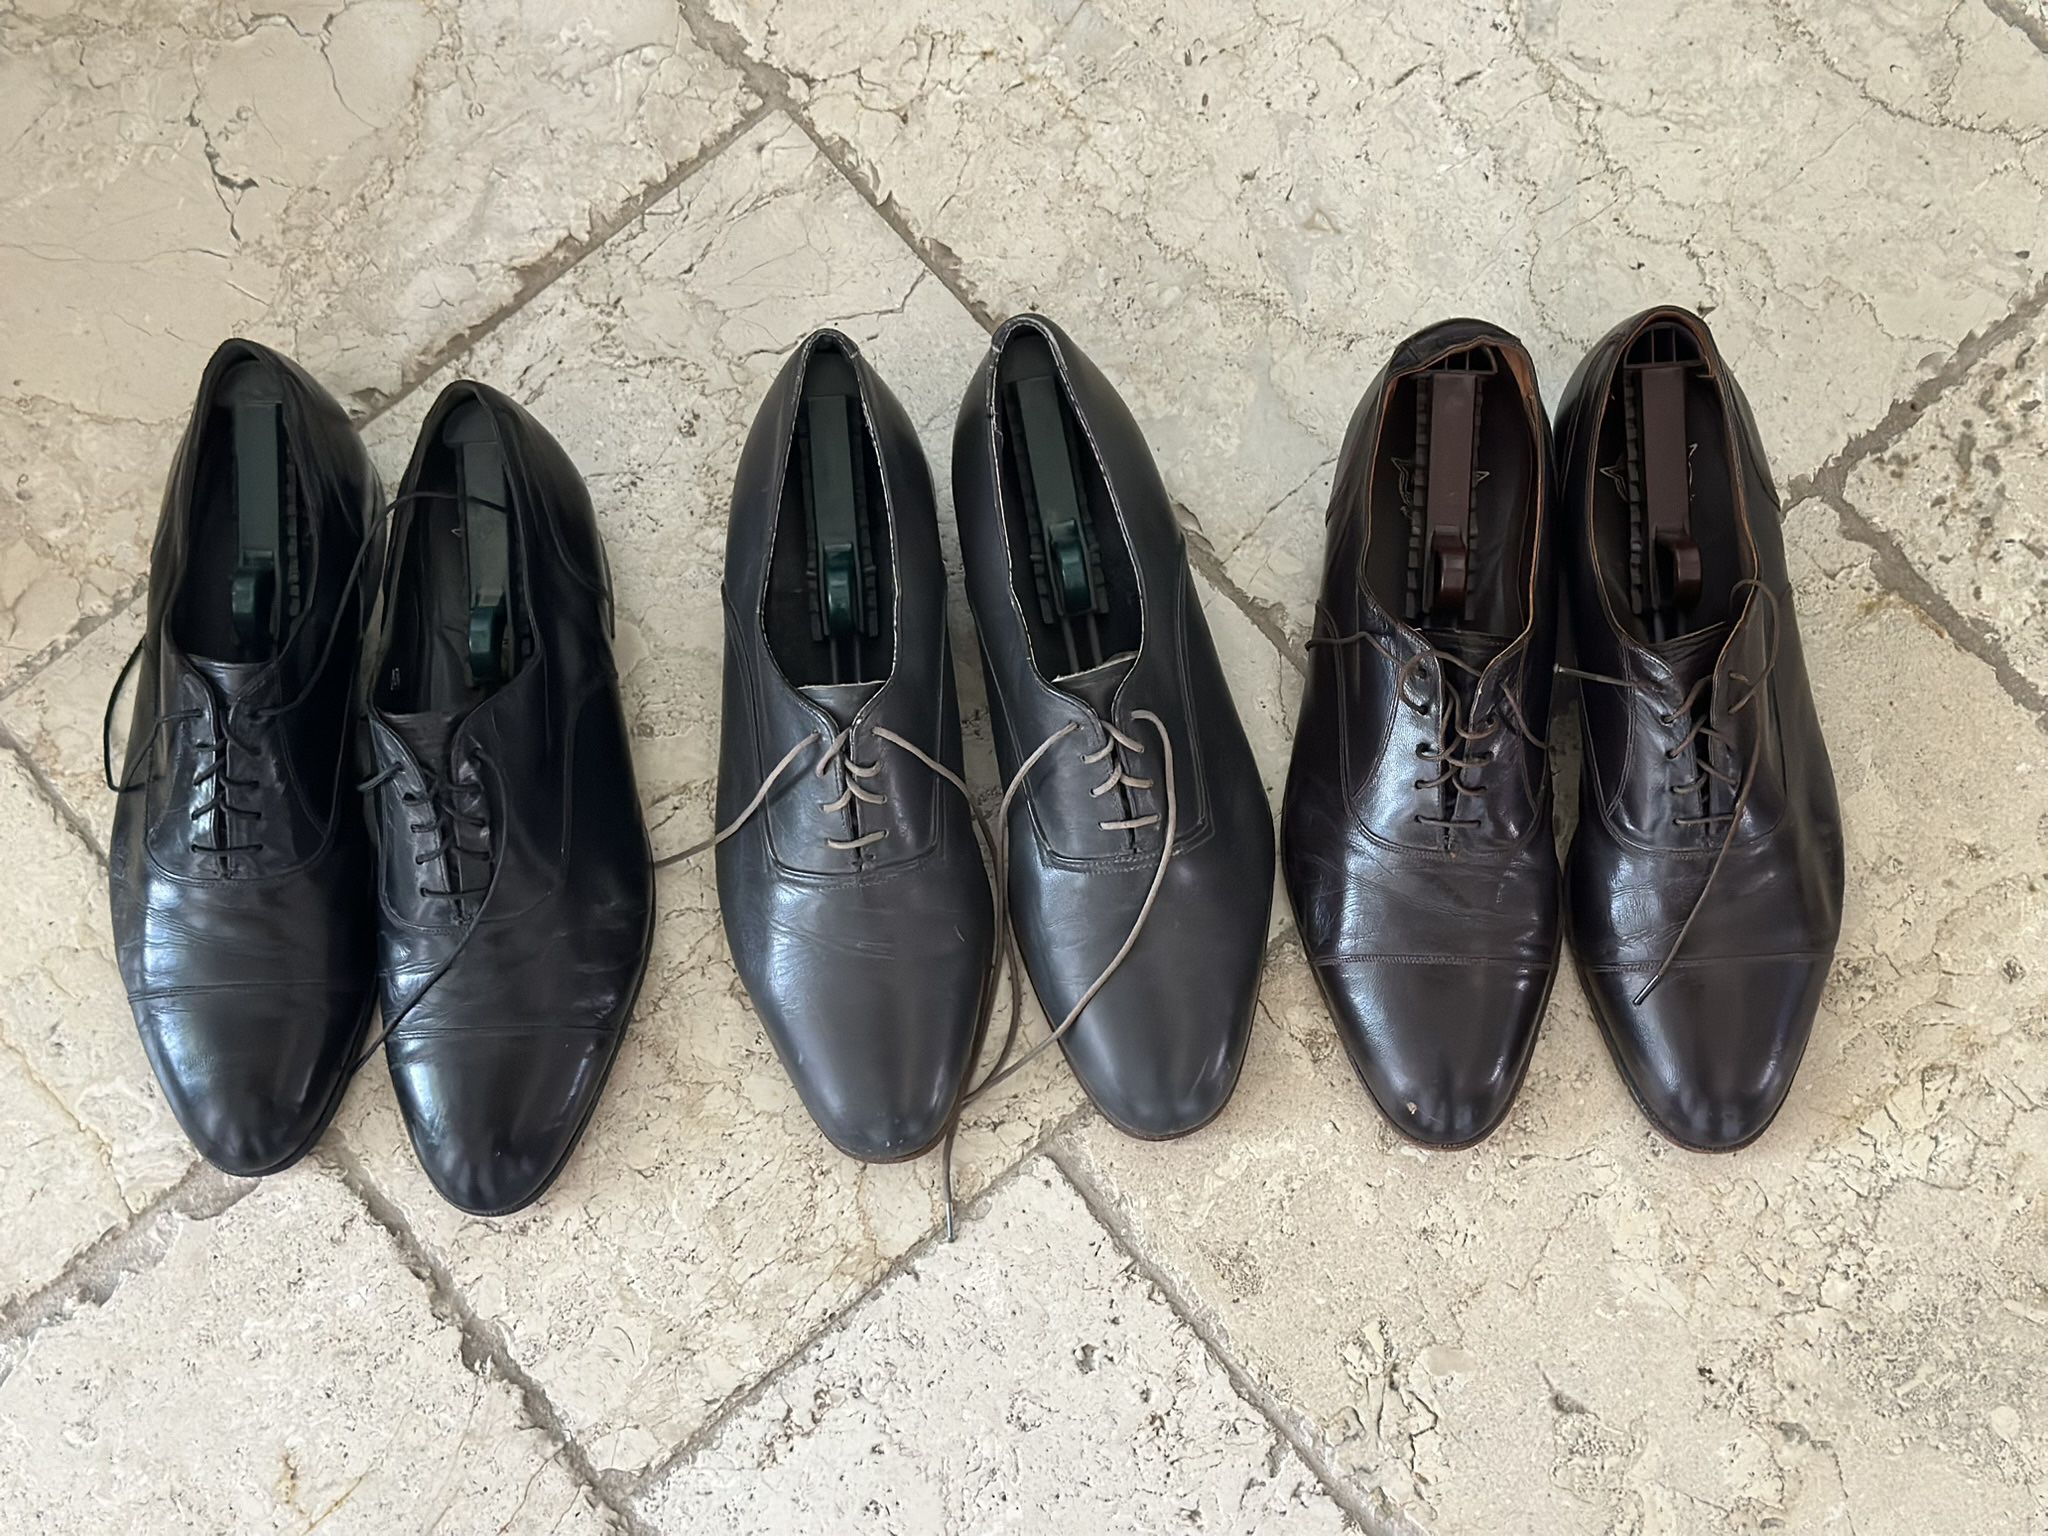 3 Pair Men’s Florsheim Dress Shoes Size 12